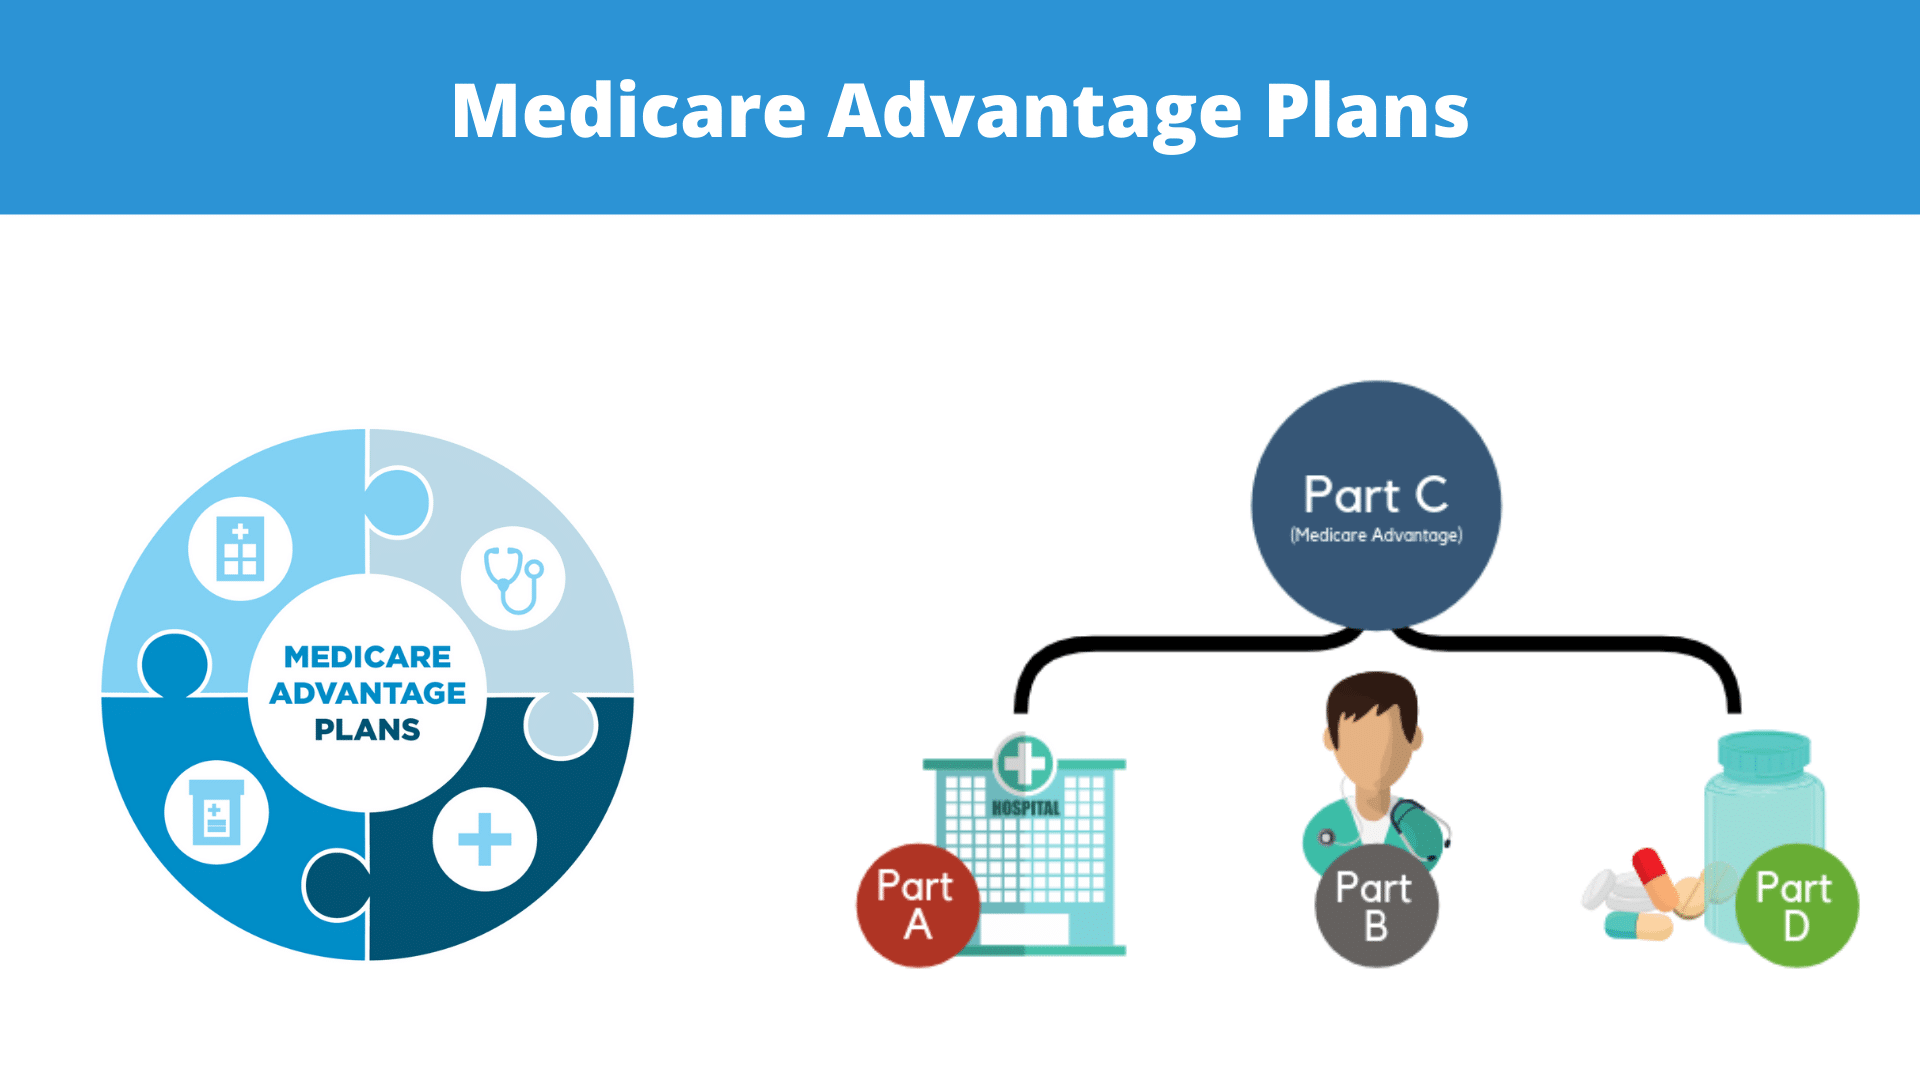 Advantages and Disadvantages of Medicare Advantage Plans